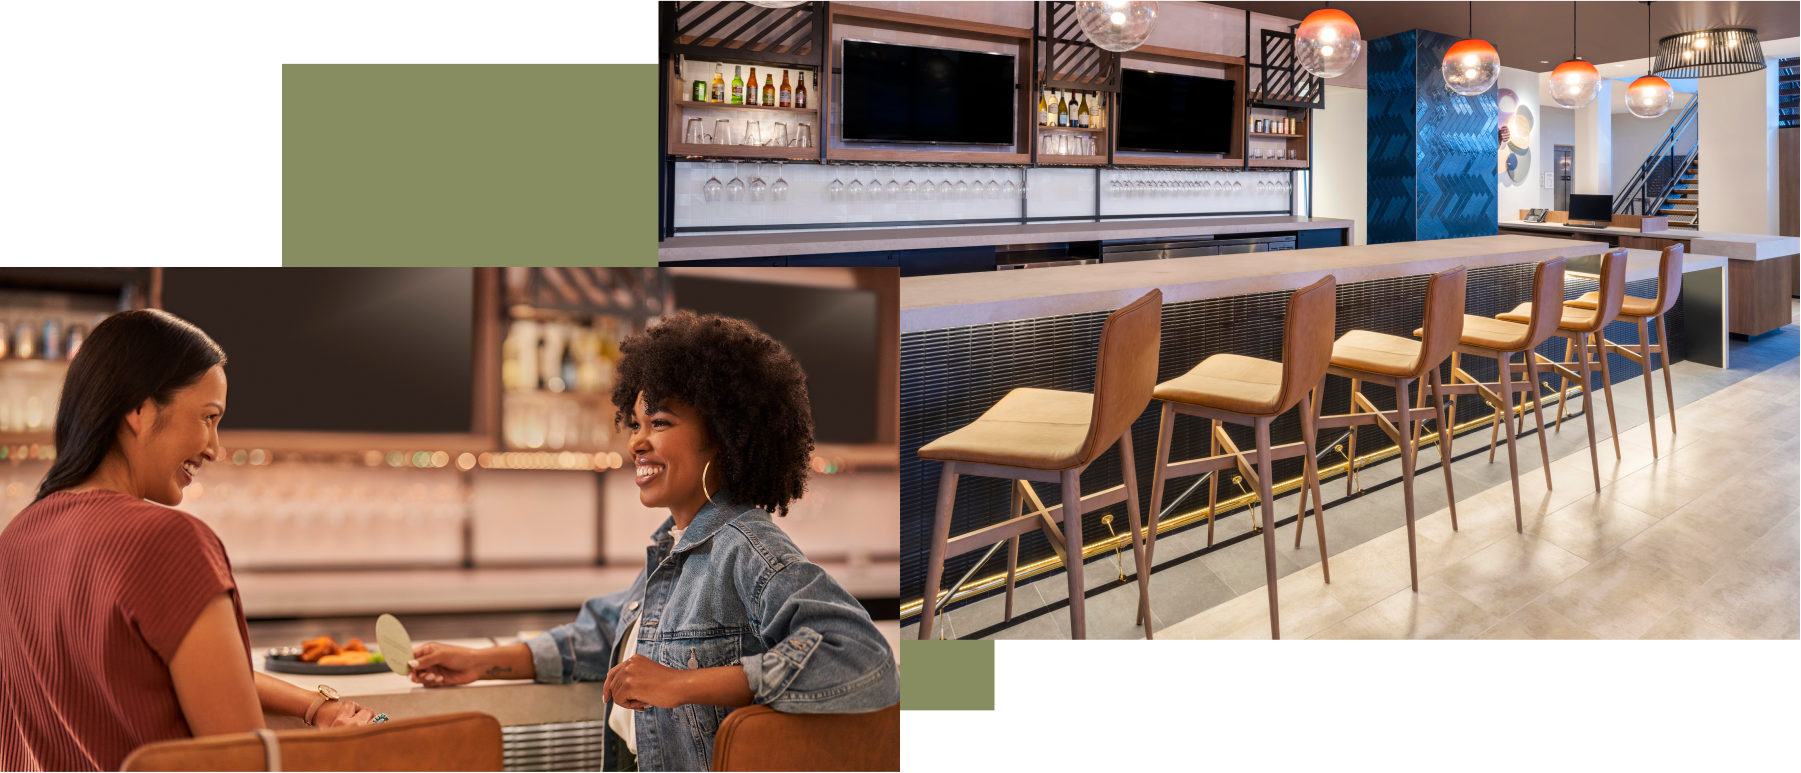 Un collage de photographies montre le bar-restaurant de l’hôtel et un groupe de voyageurs profitant d’un verre ensemble.